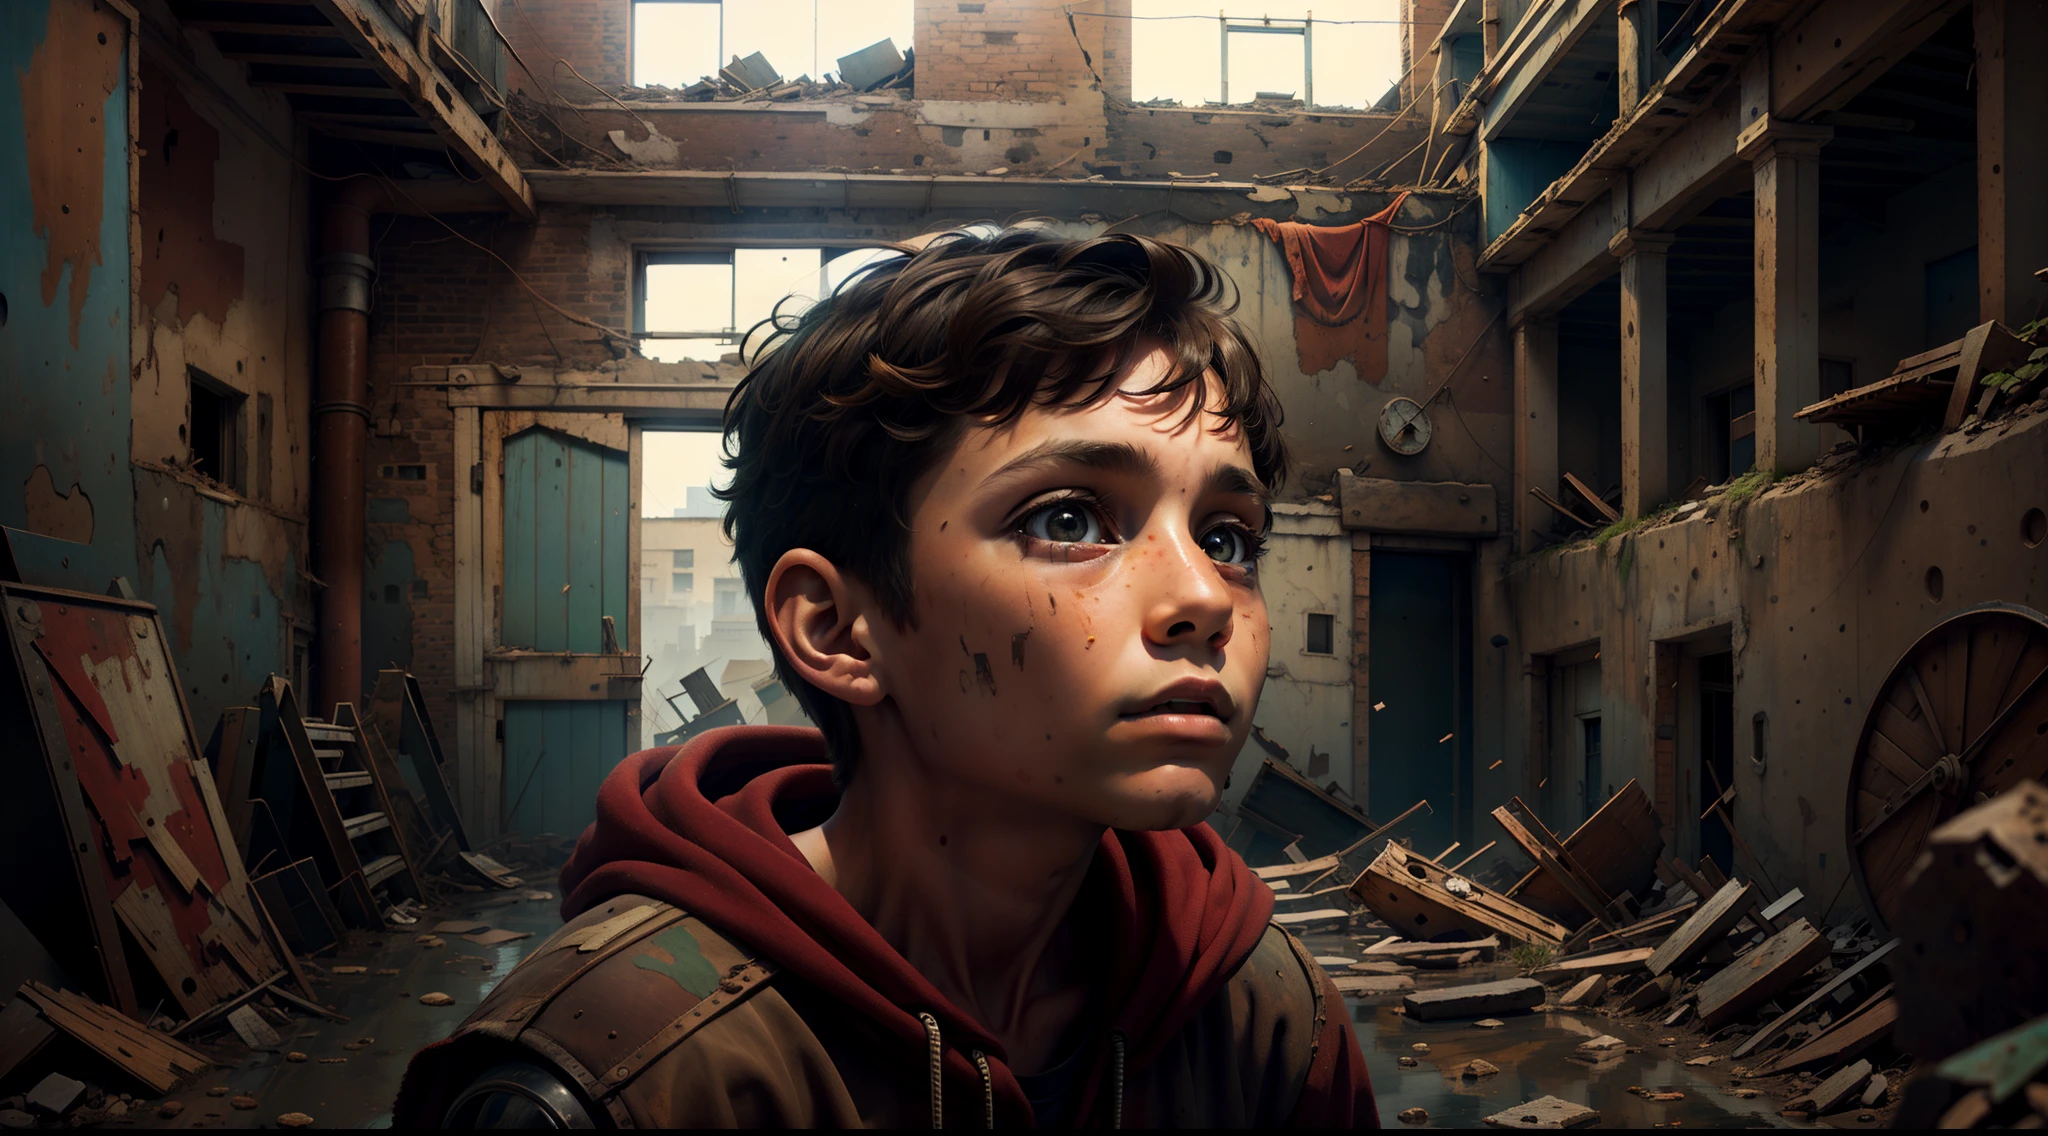 Un curioso Max de 12 años, mirando dentro de un viejo, fabrica abandonada, con una sensación de asombro en sus ojos.